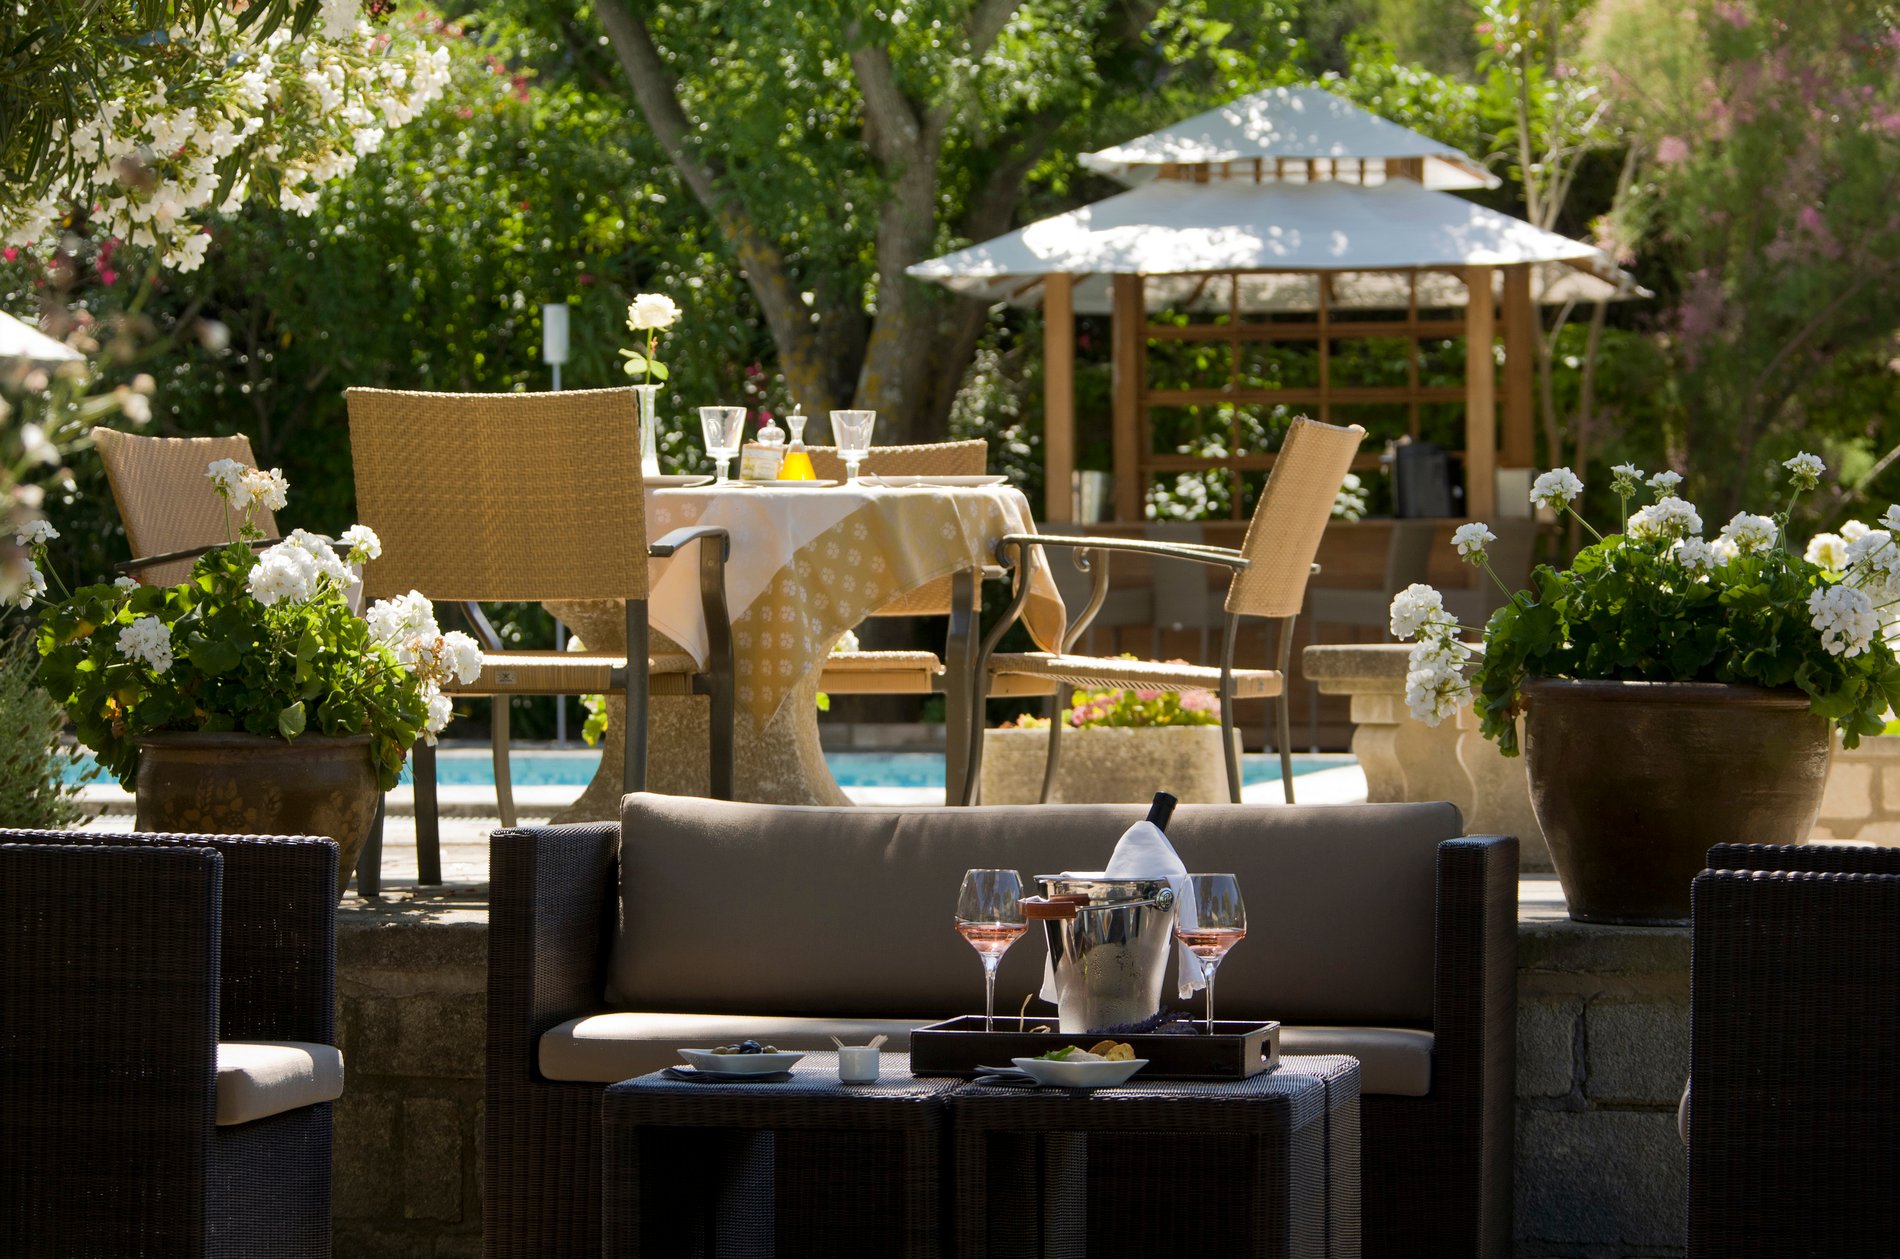 Luxury boutique hotel Benvengudo 4 stars Les Baux-de-Provence France pool restaurant bar